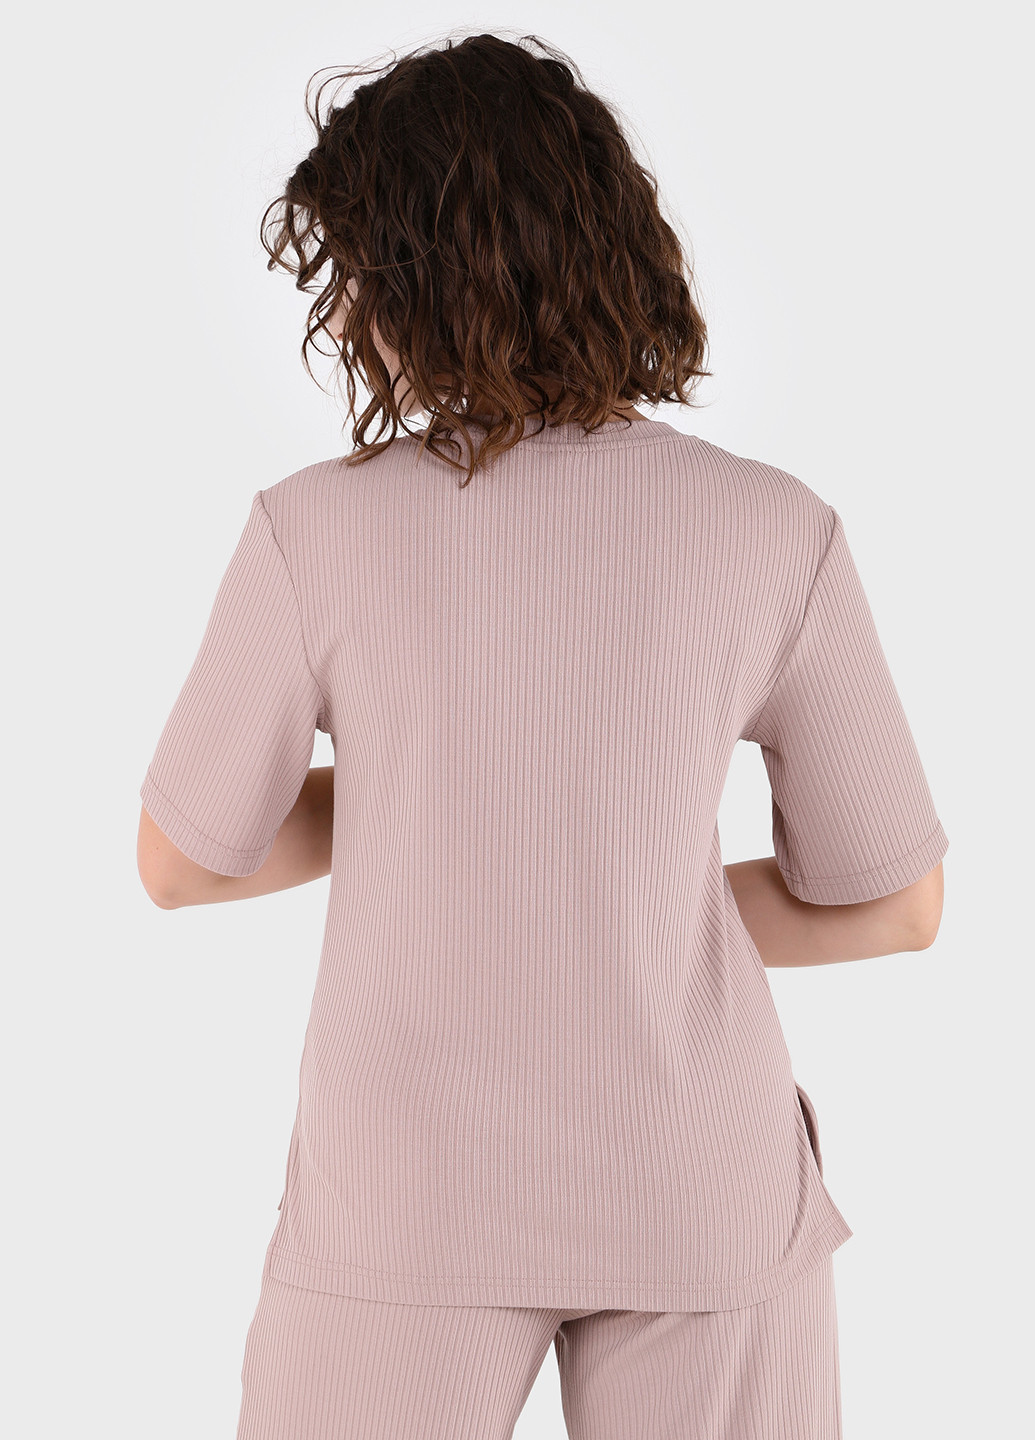 Бежевая летняя легкая футболка женская в рубчик 800000023 с коротким рукавом Merlini Корунья